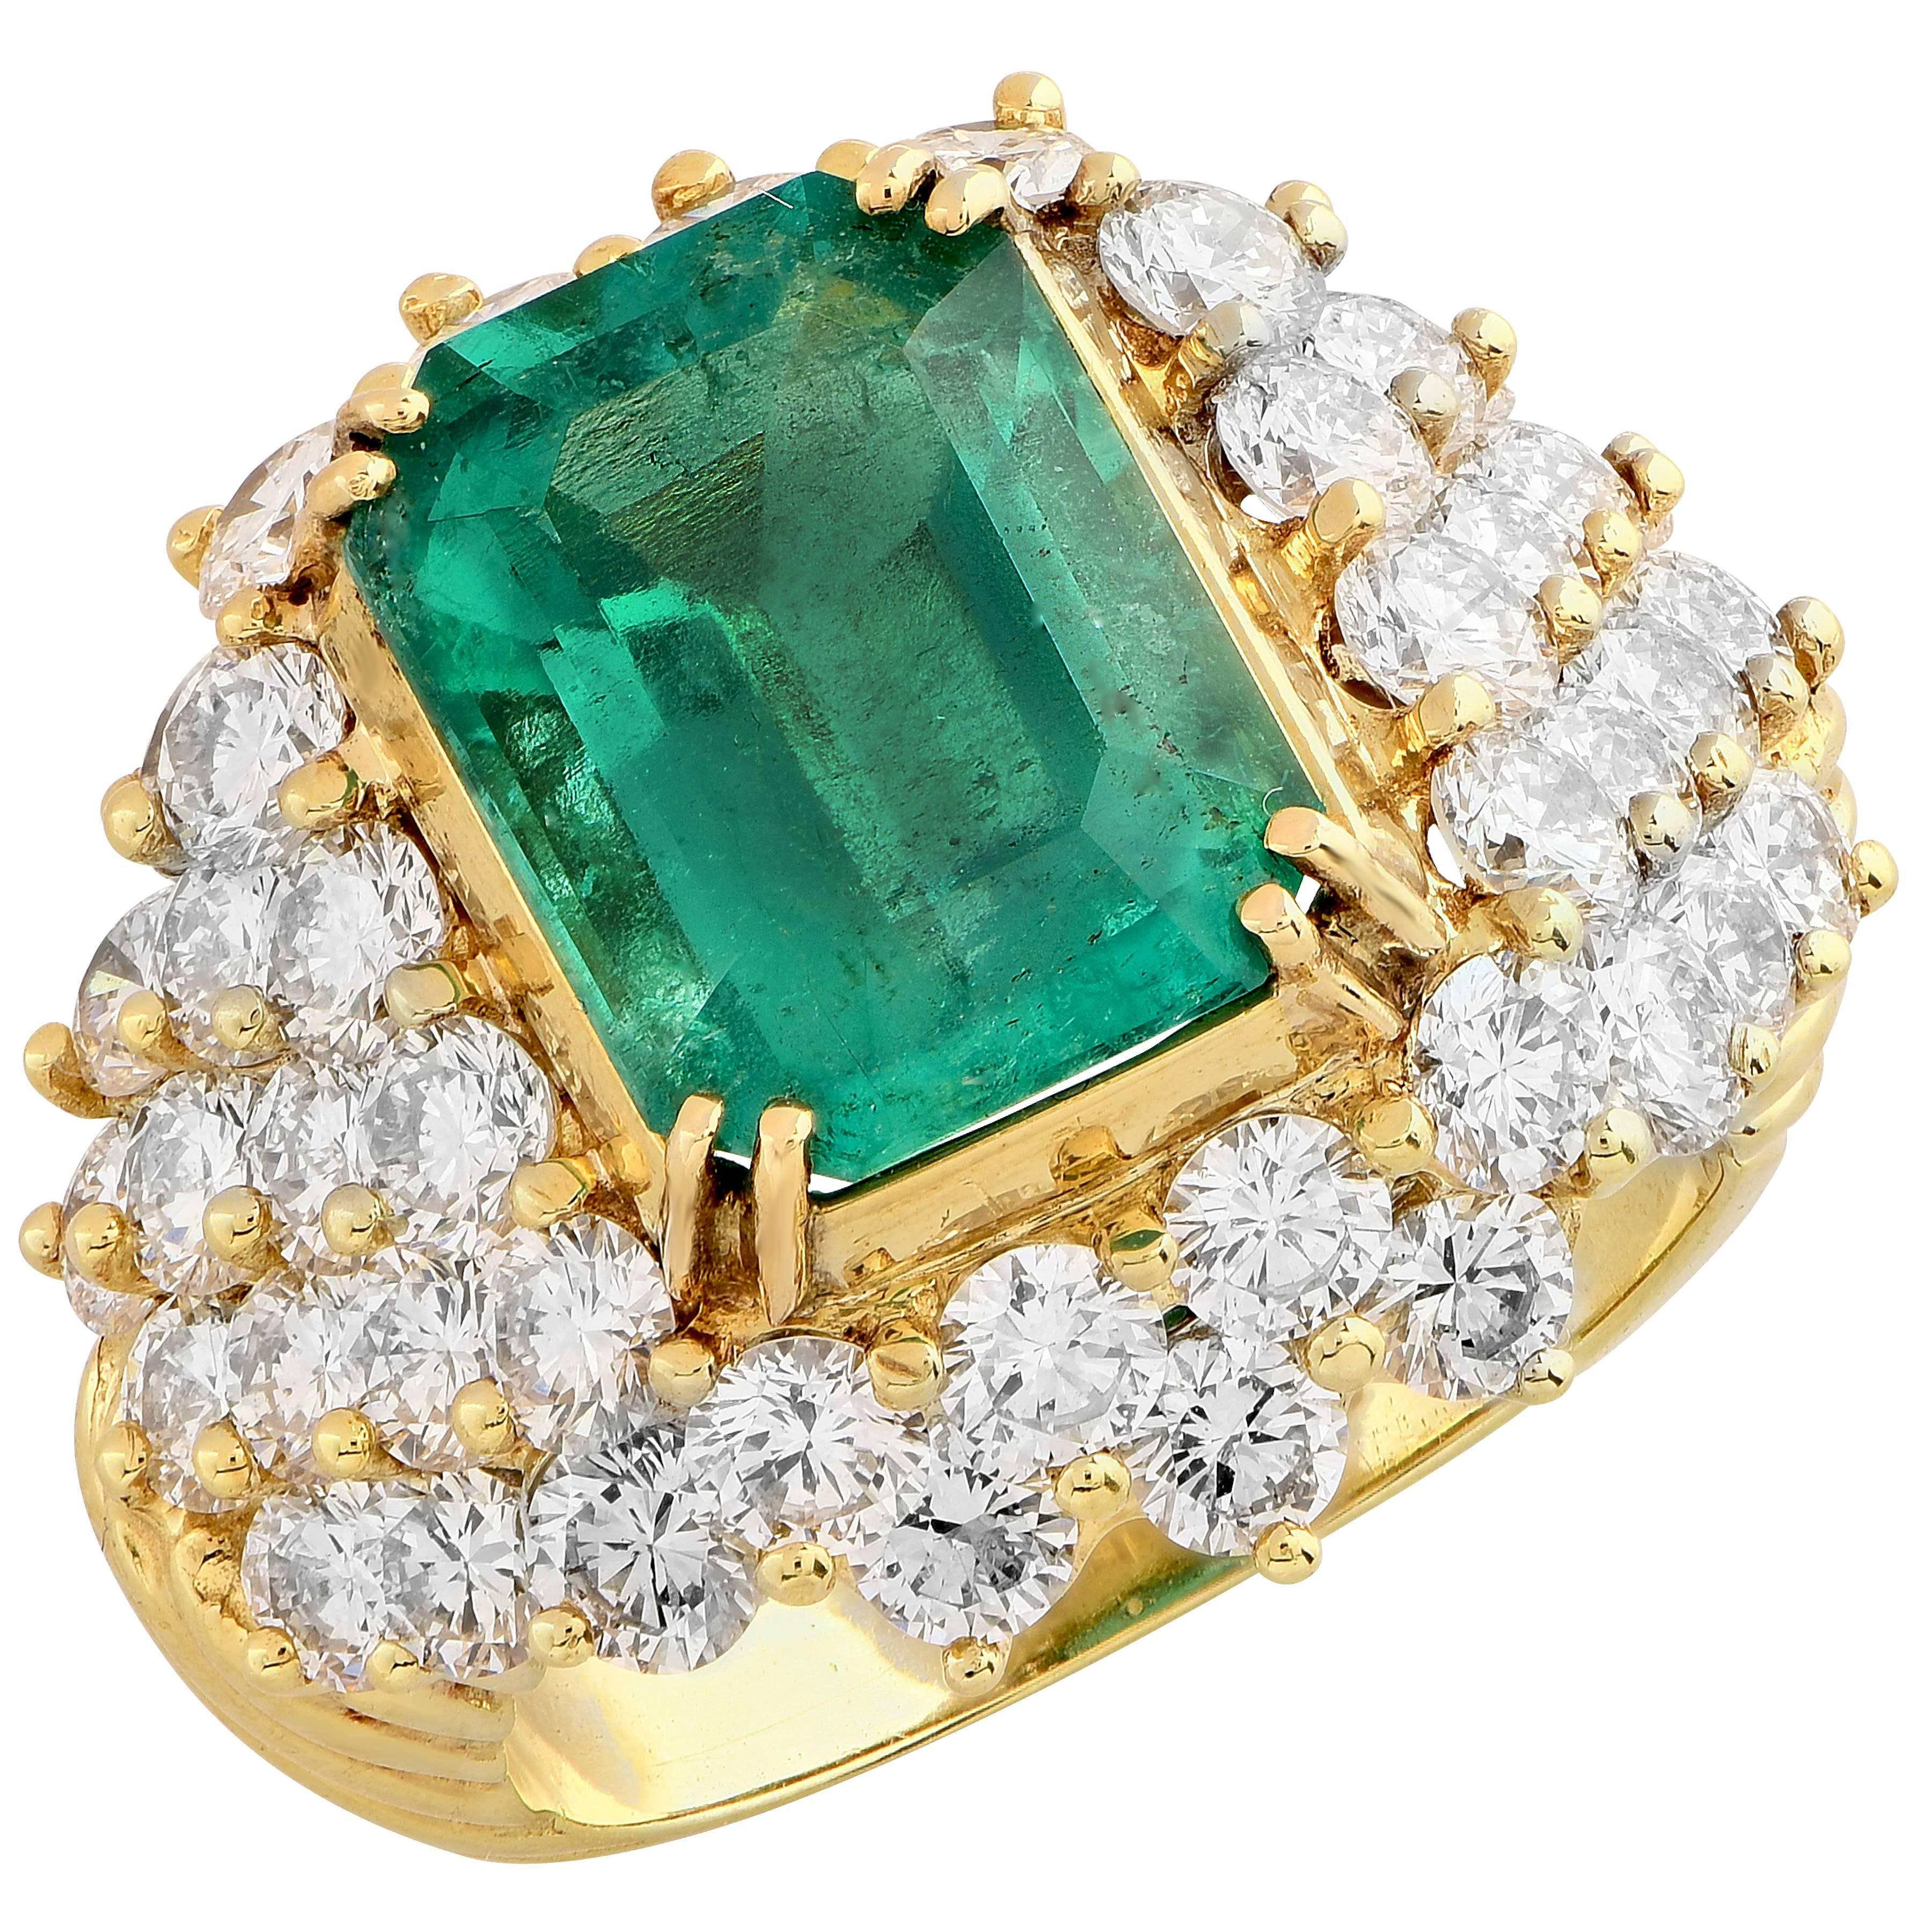 Emerald Cut 6.20 Carat Natural Emerald and 5.2 Carat Diamond 18 Karat Yellow Gold Ring